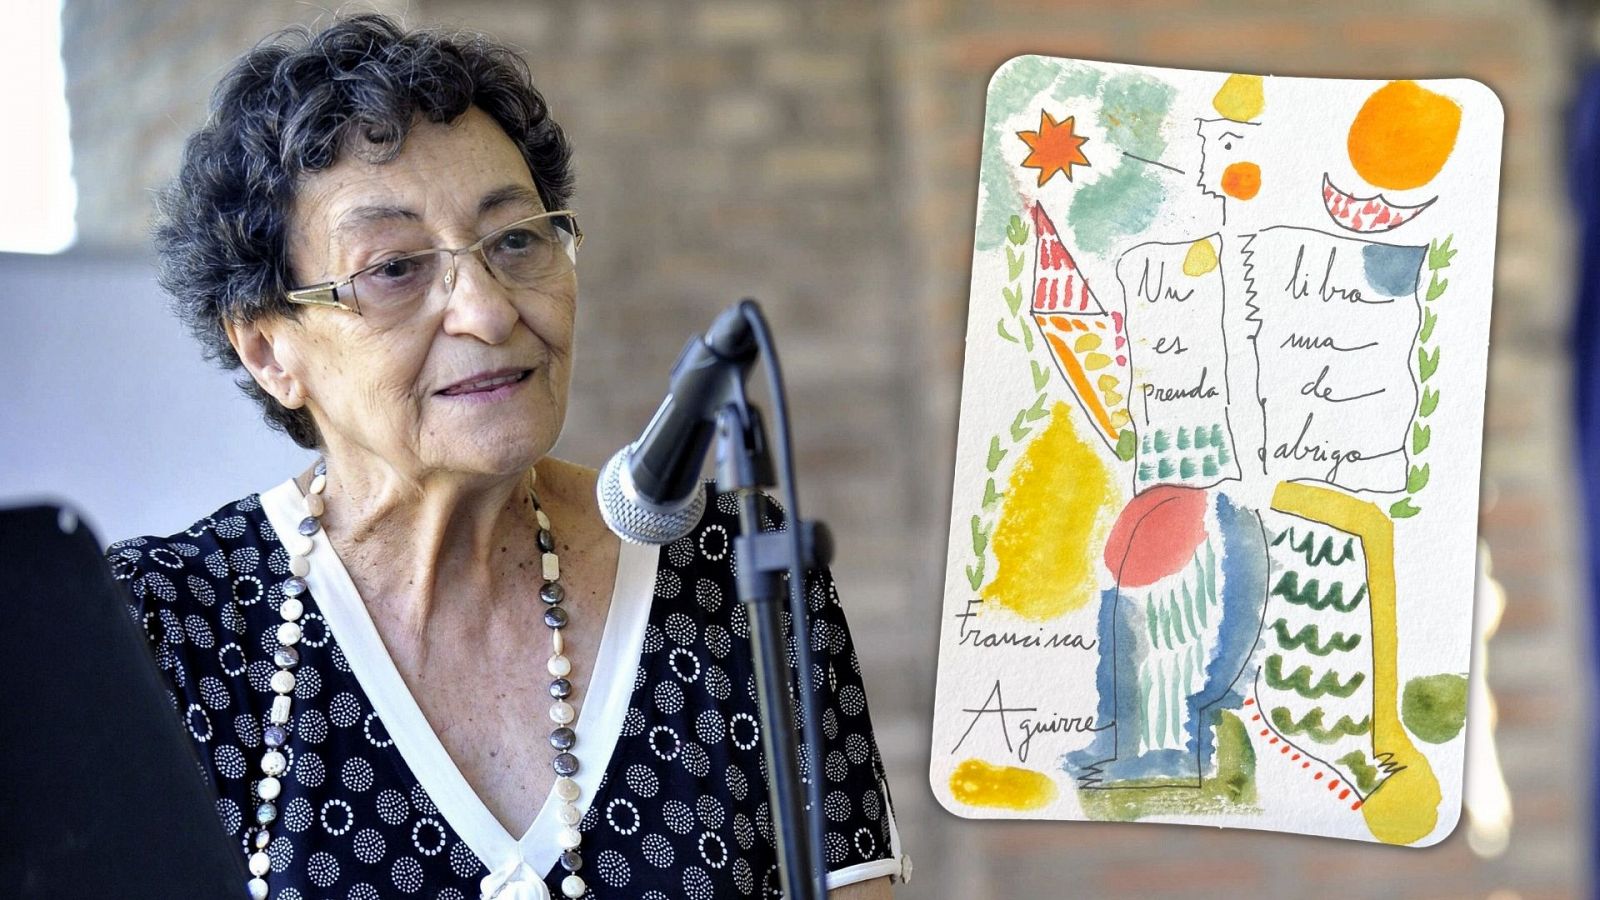 Especiales RNE - Mario Obrero dibuja la "Nana de los libros viejos" de Francisca Aguirre - Escuchar ahora